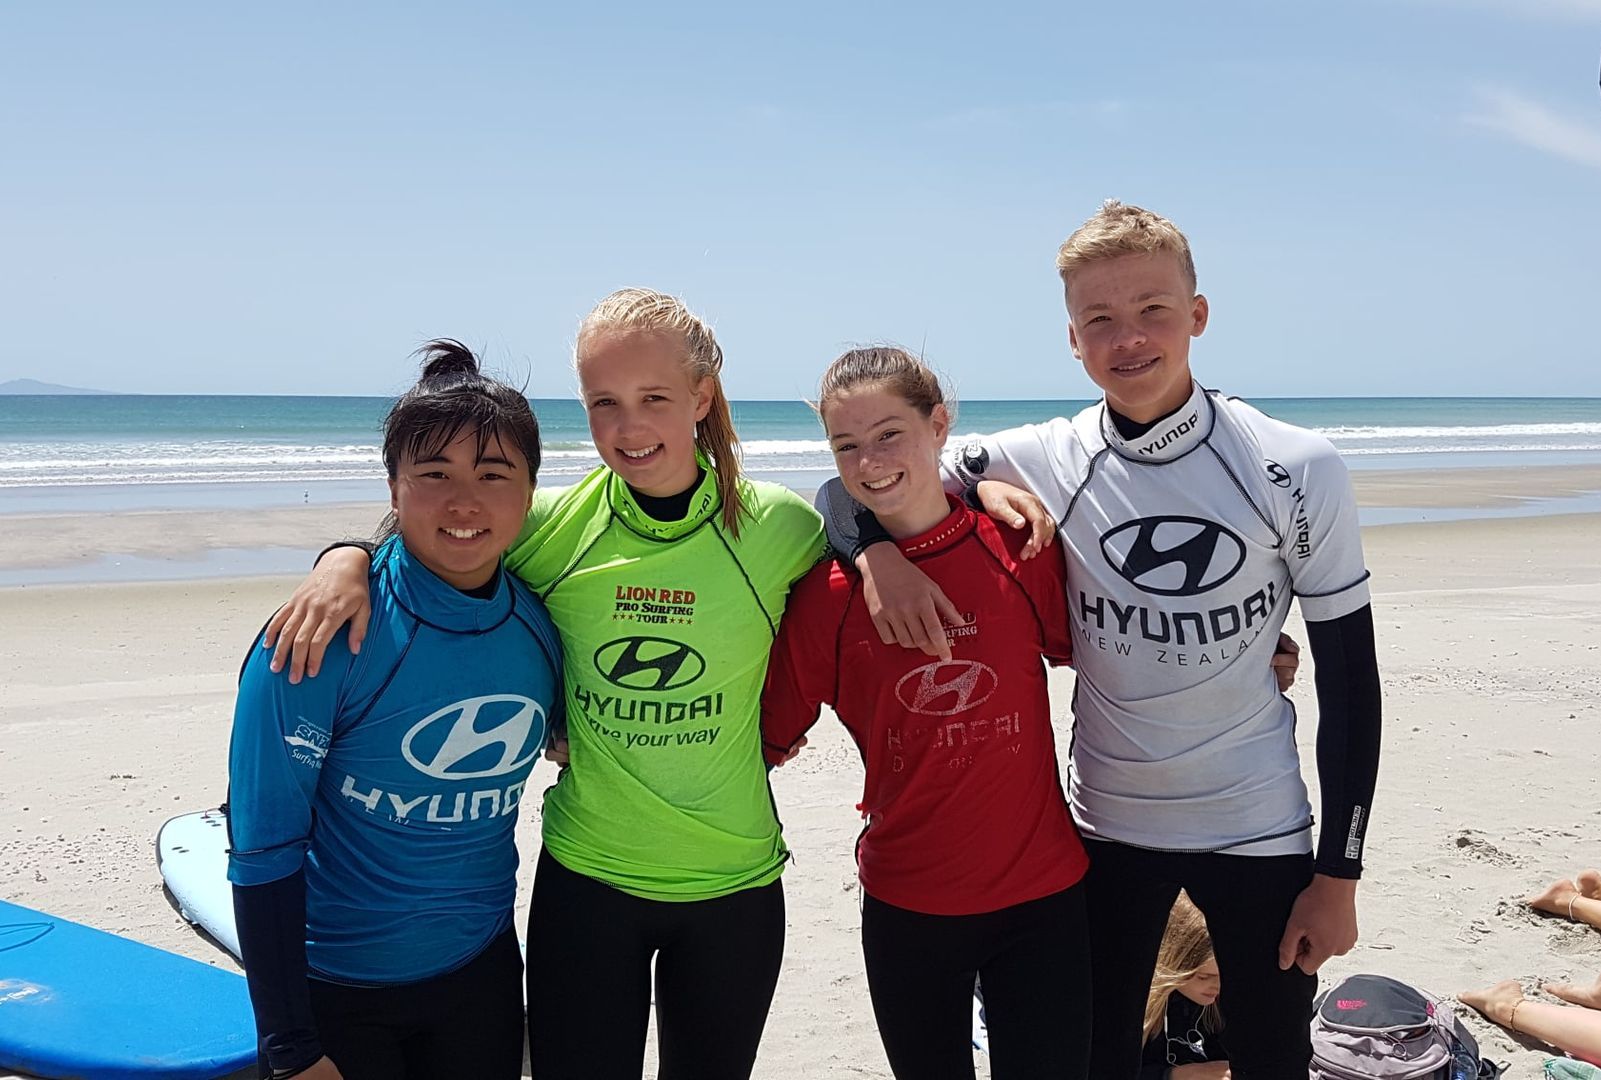 Auslandsjahr Switch You SchülerInnen stehen am Strand mit Surfshirts